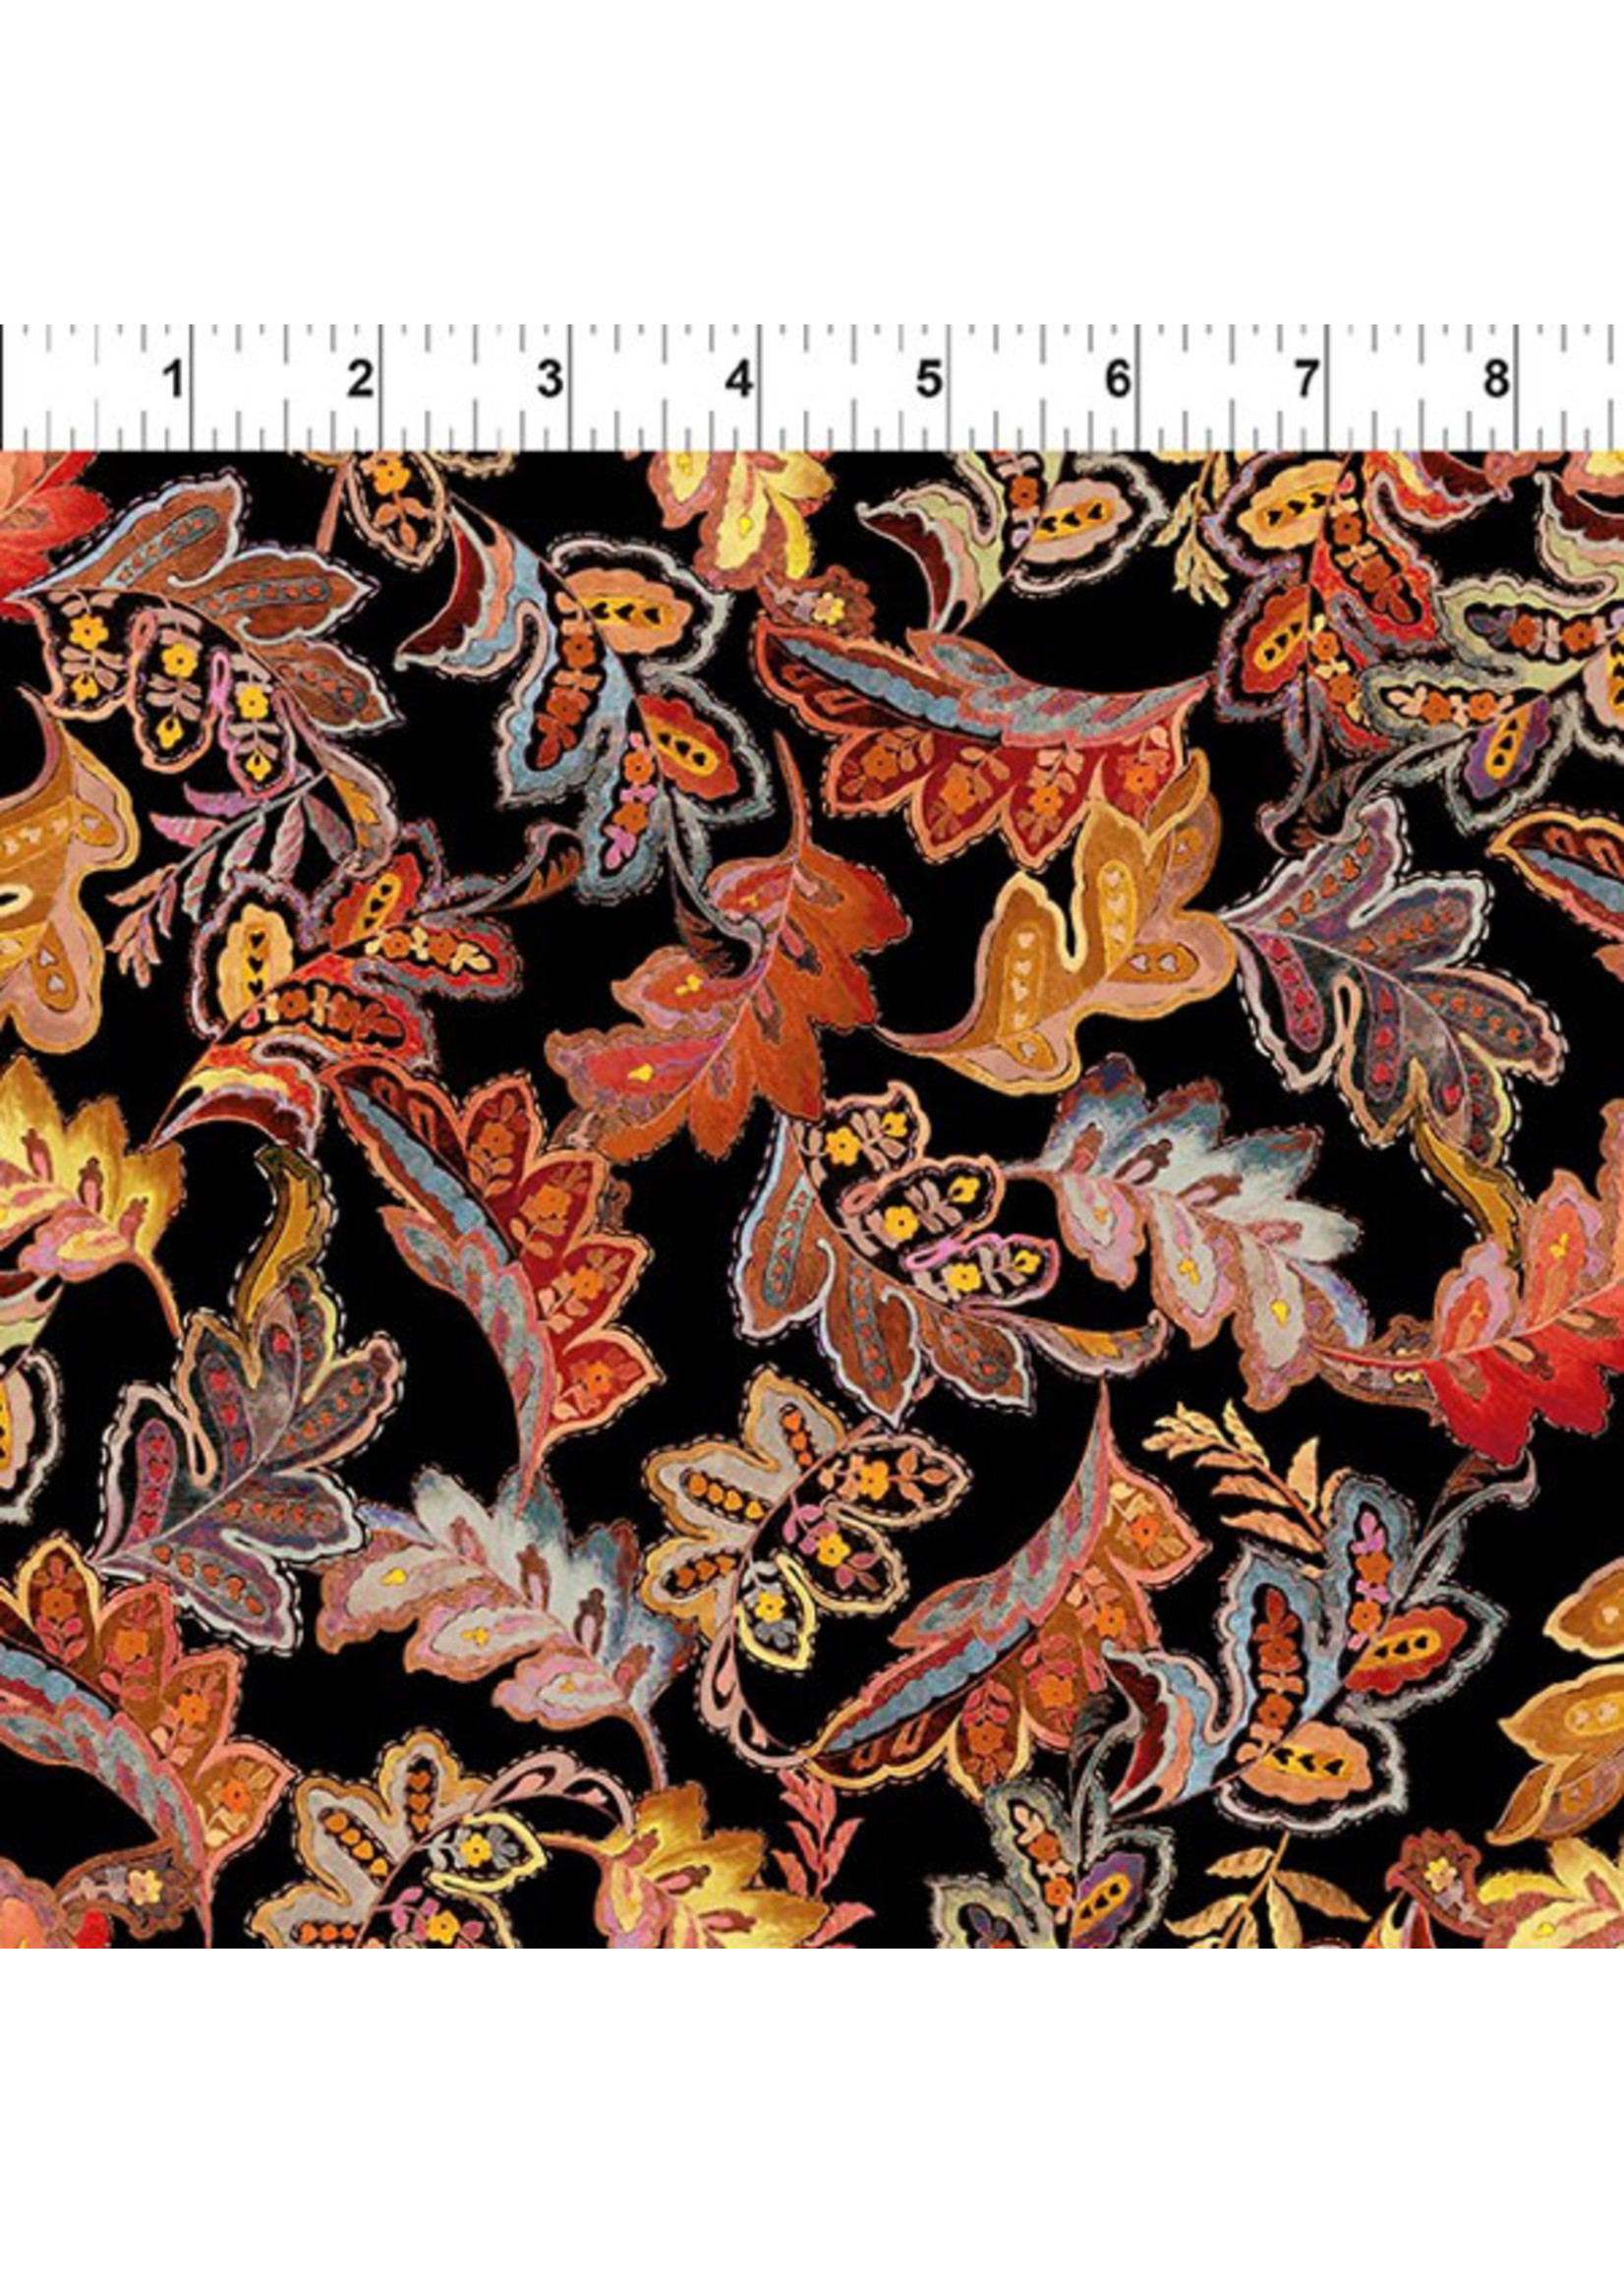 Resplendent - Leaves - Autumn